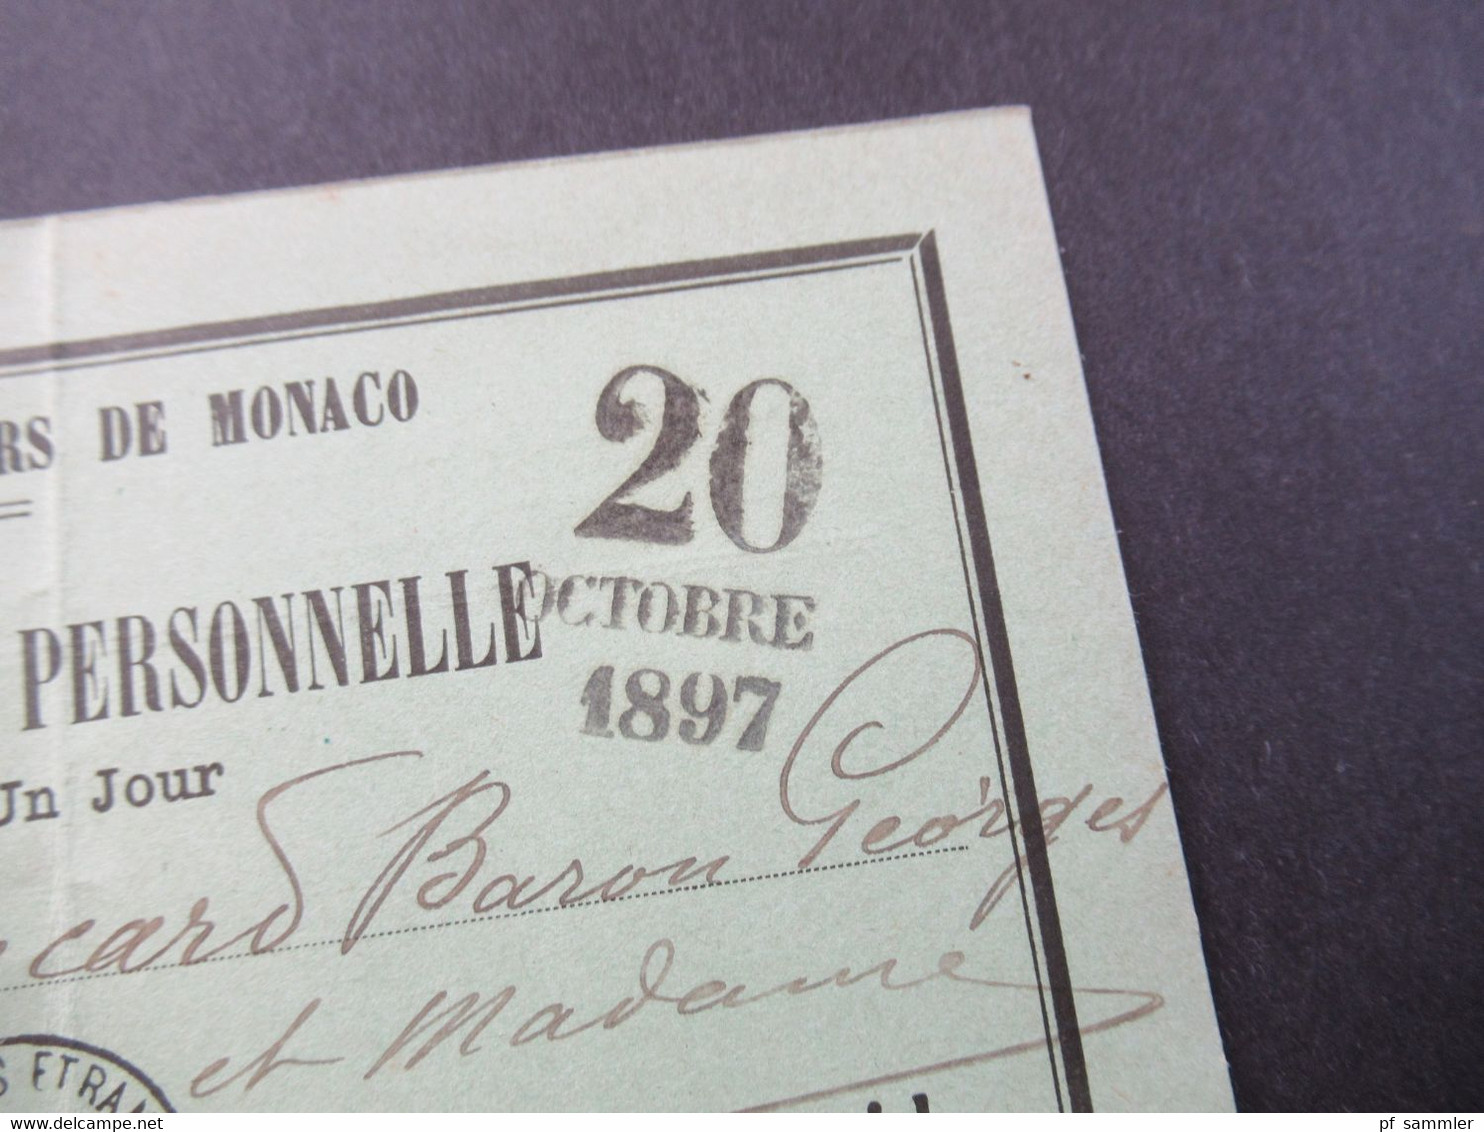 Monaco 20.10.1897 Carte D'Admission Personelle Cercle Des Etrangers De Monaco Valabe Pour Un Jour - Cartas & Documentos